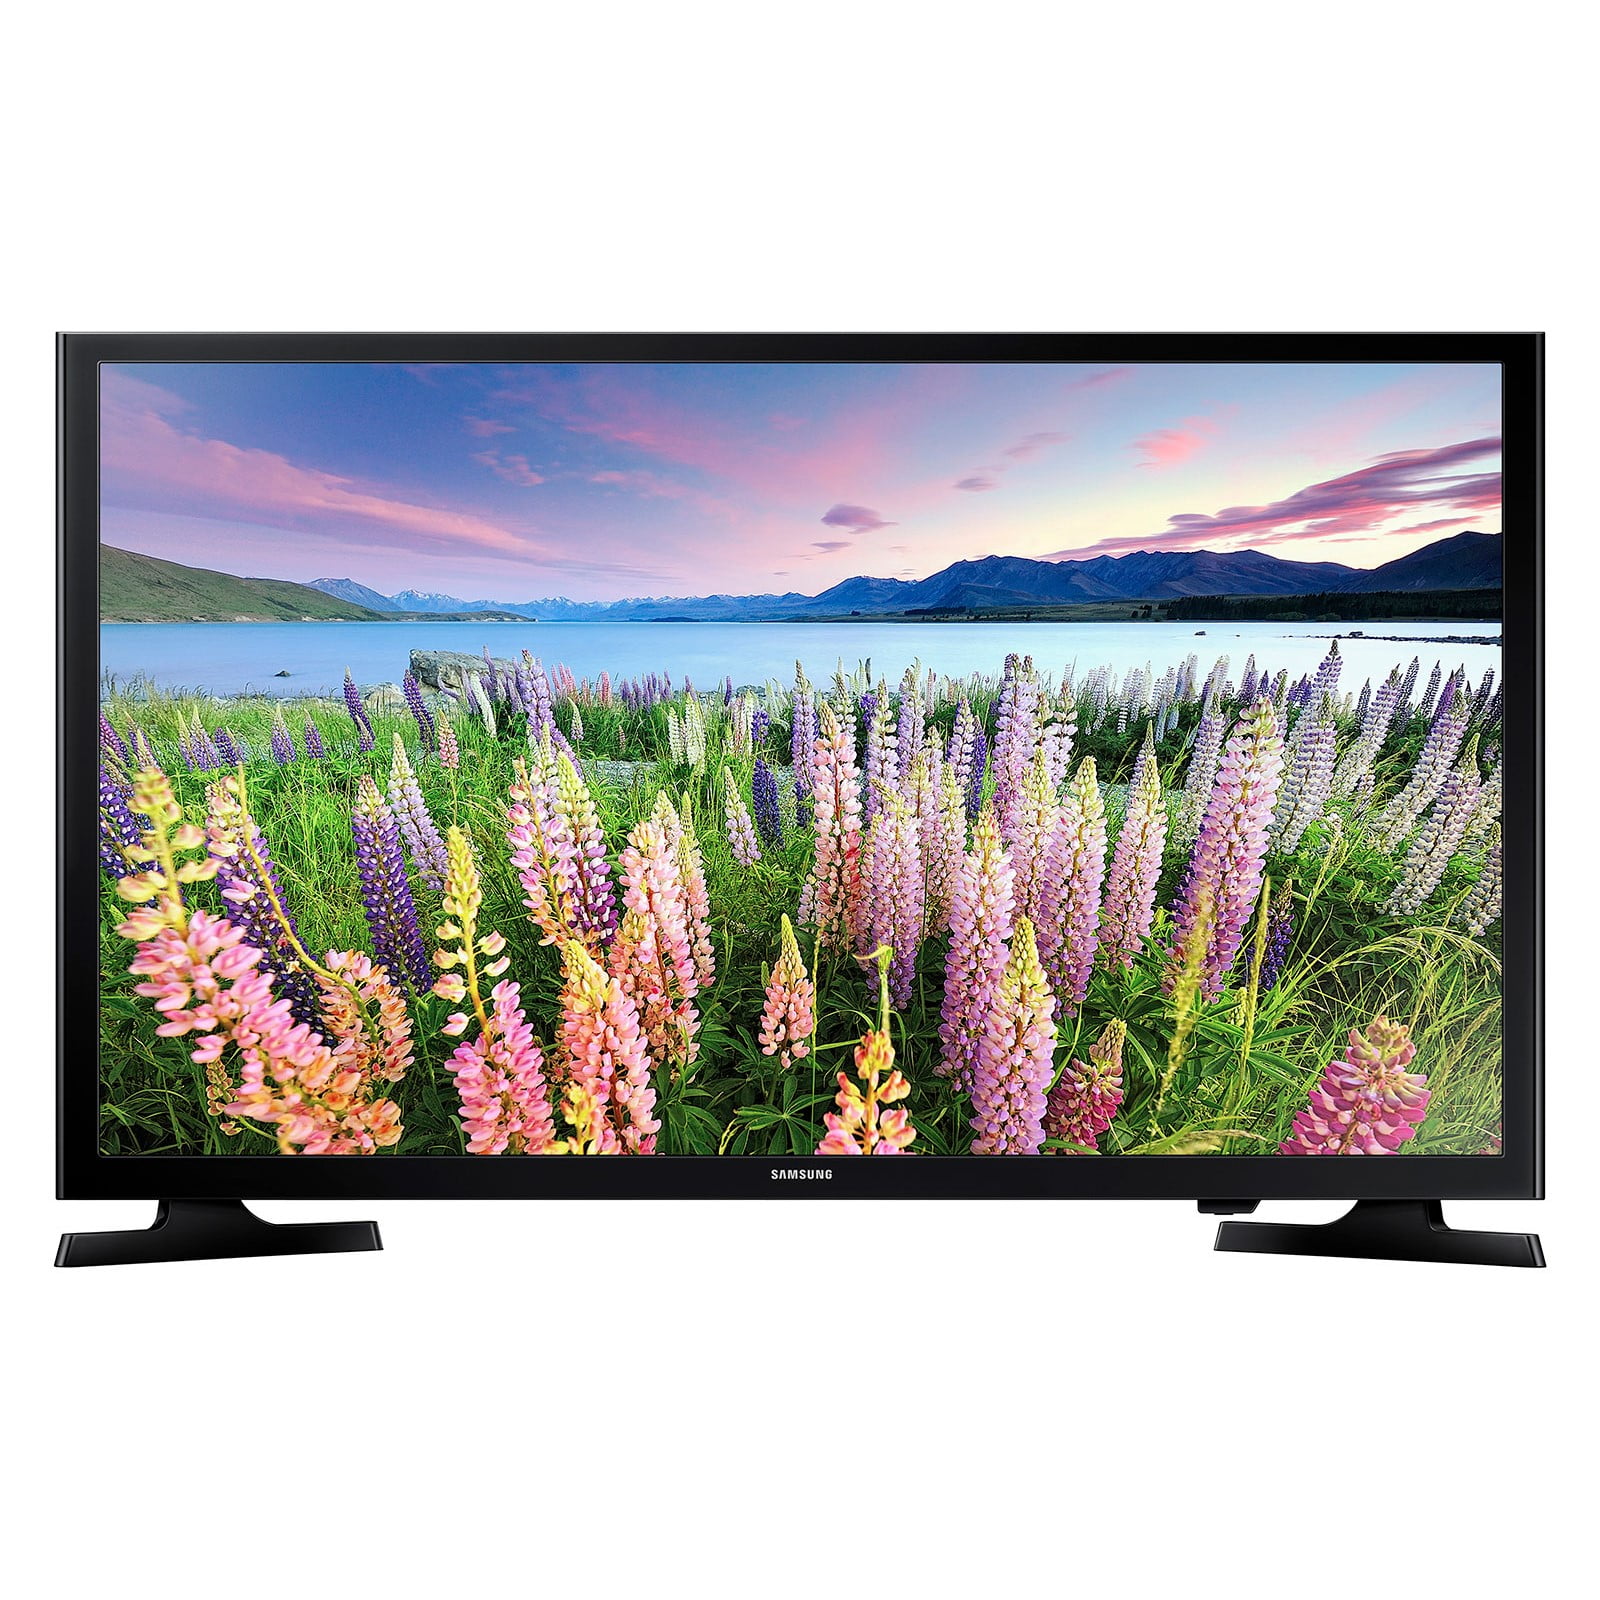 SAMSUNG 40 Class N5200 Series Full HD (1080P) LED Smart Television -  UN40N5200AFXZA 